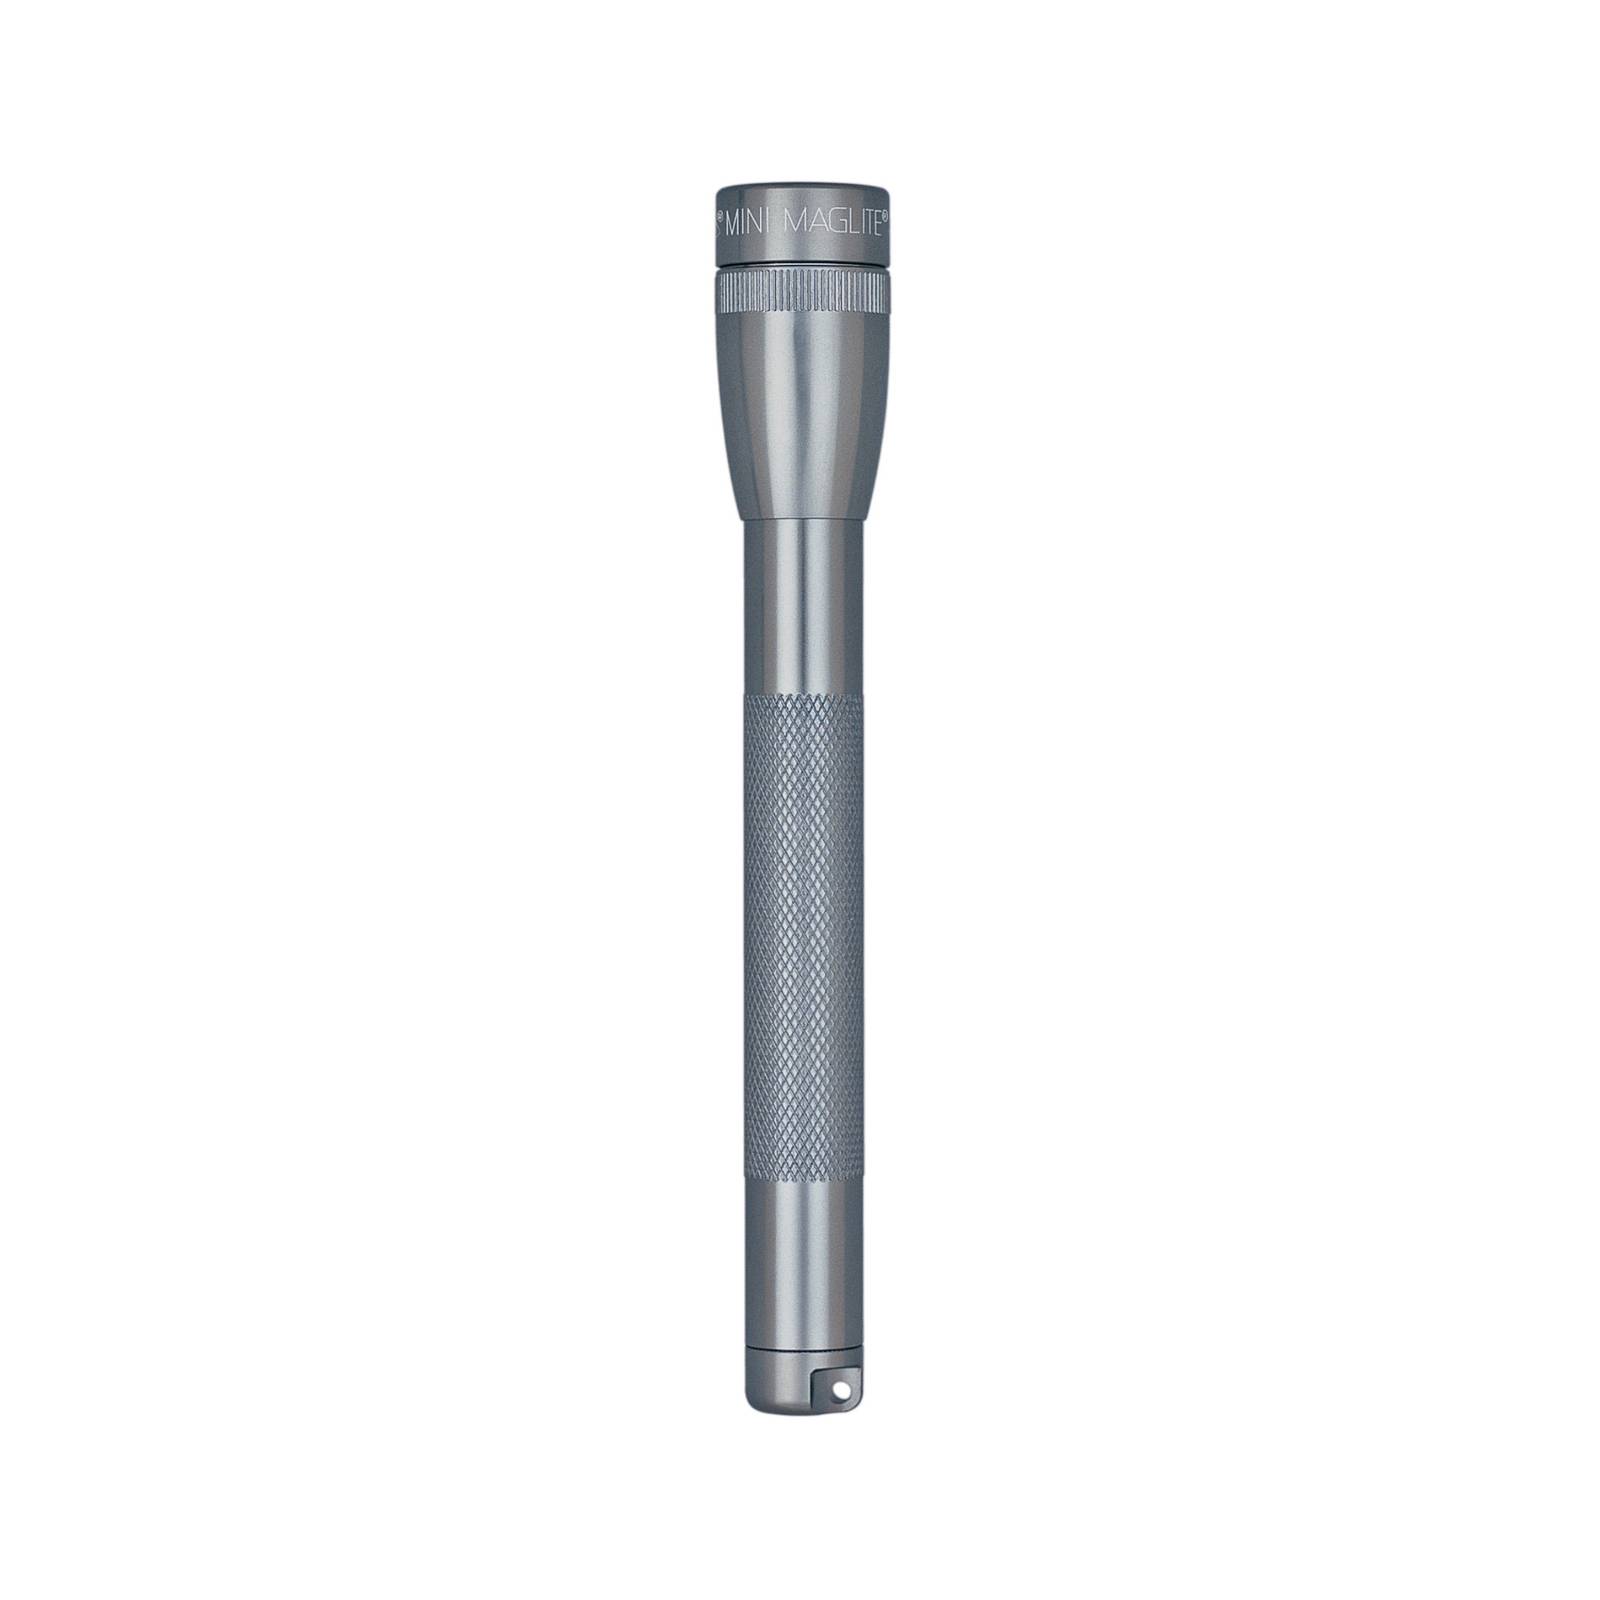 maglite lampe de poche au xénon mini, 2-cell aaa, gris